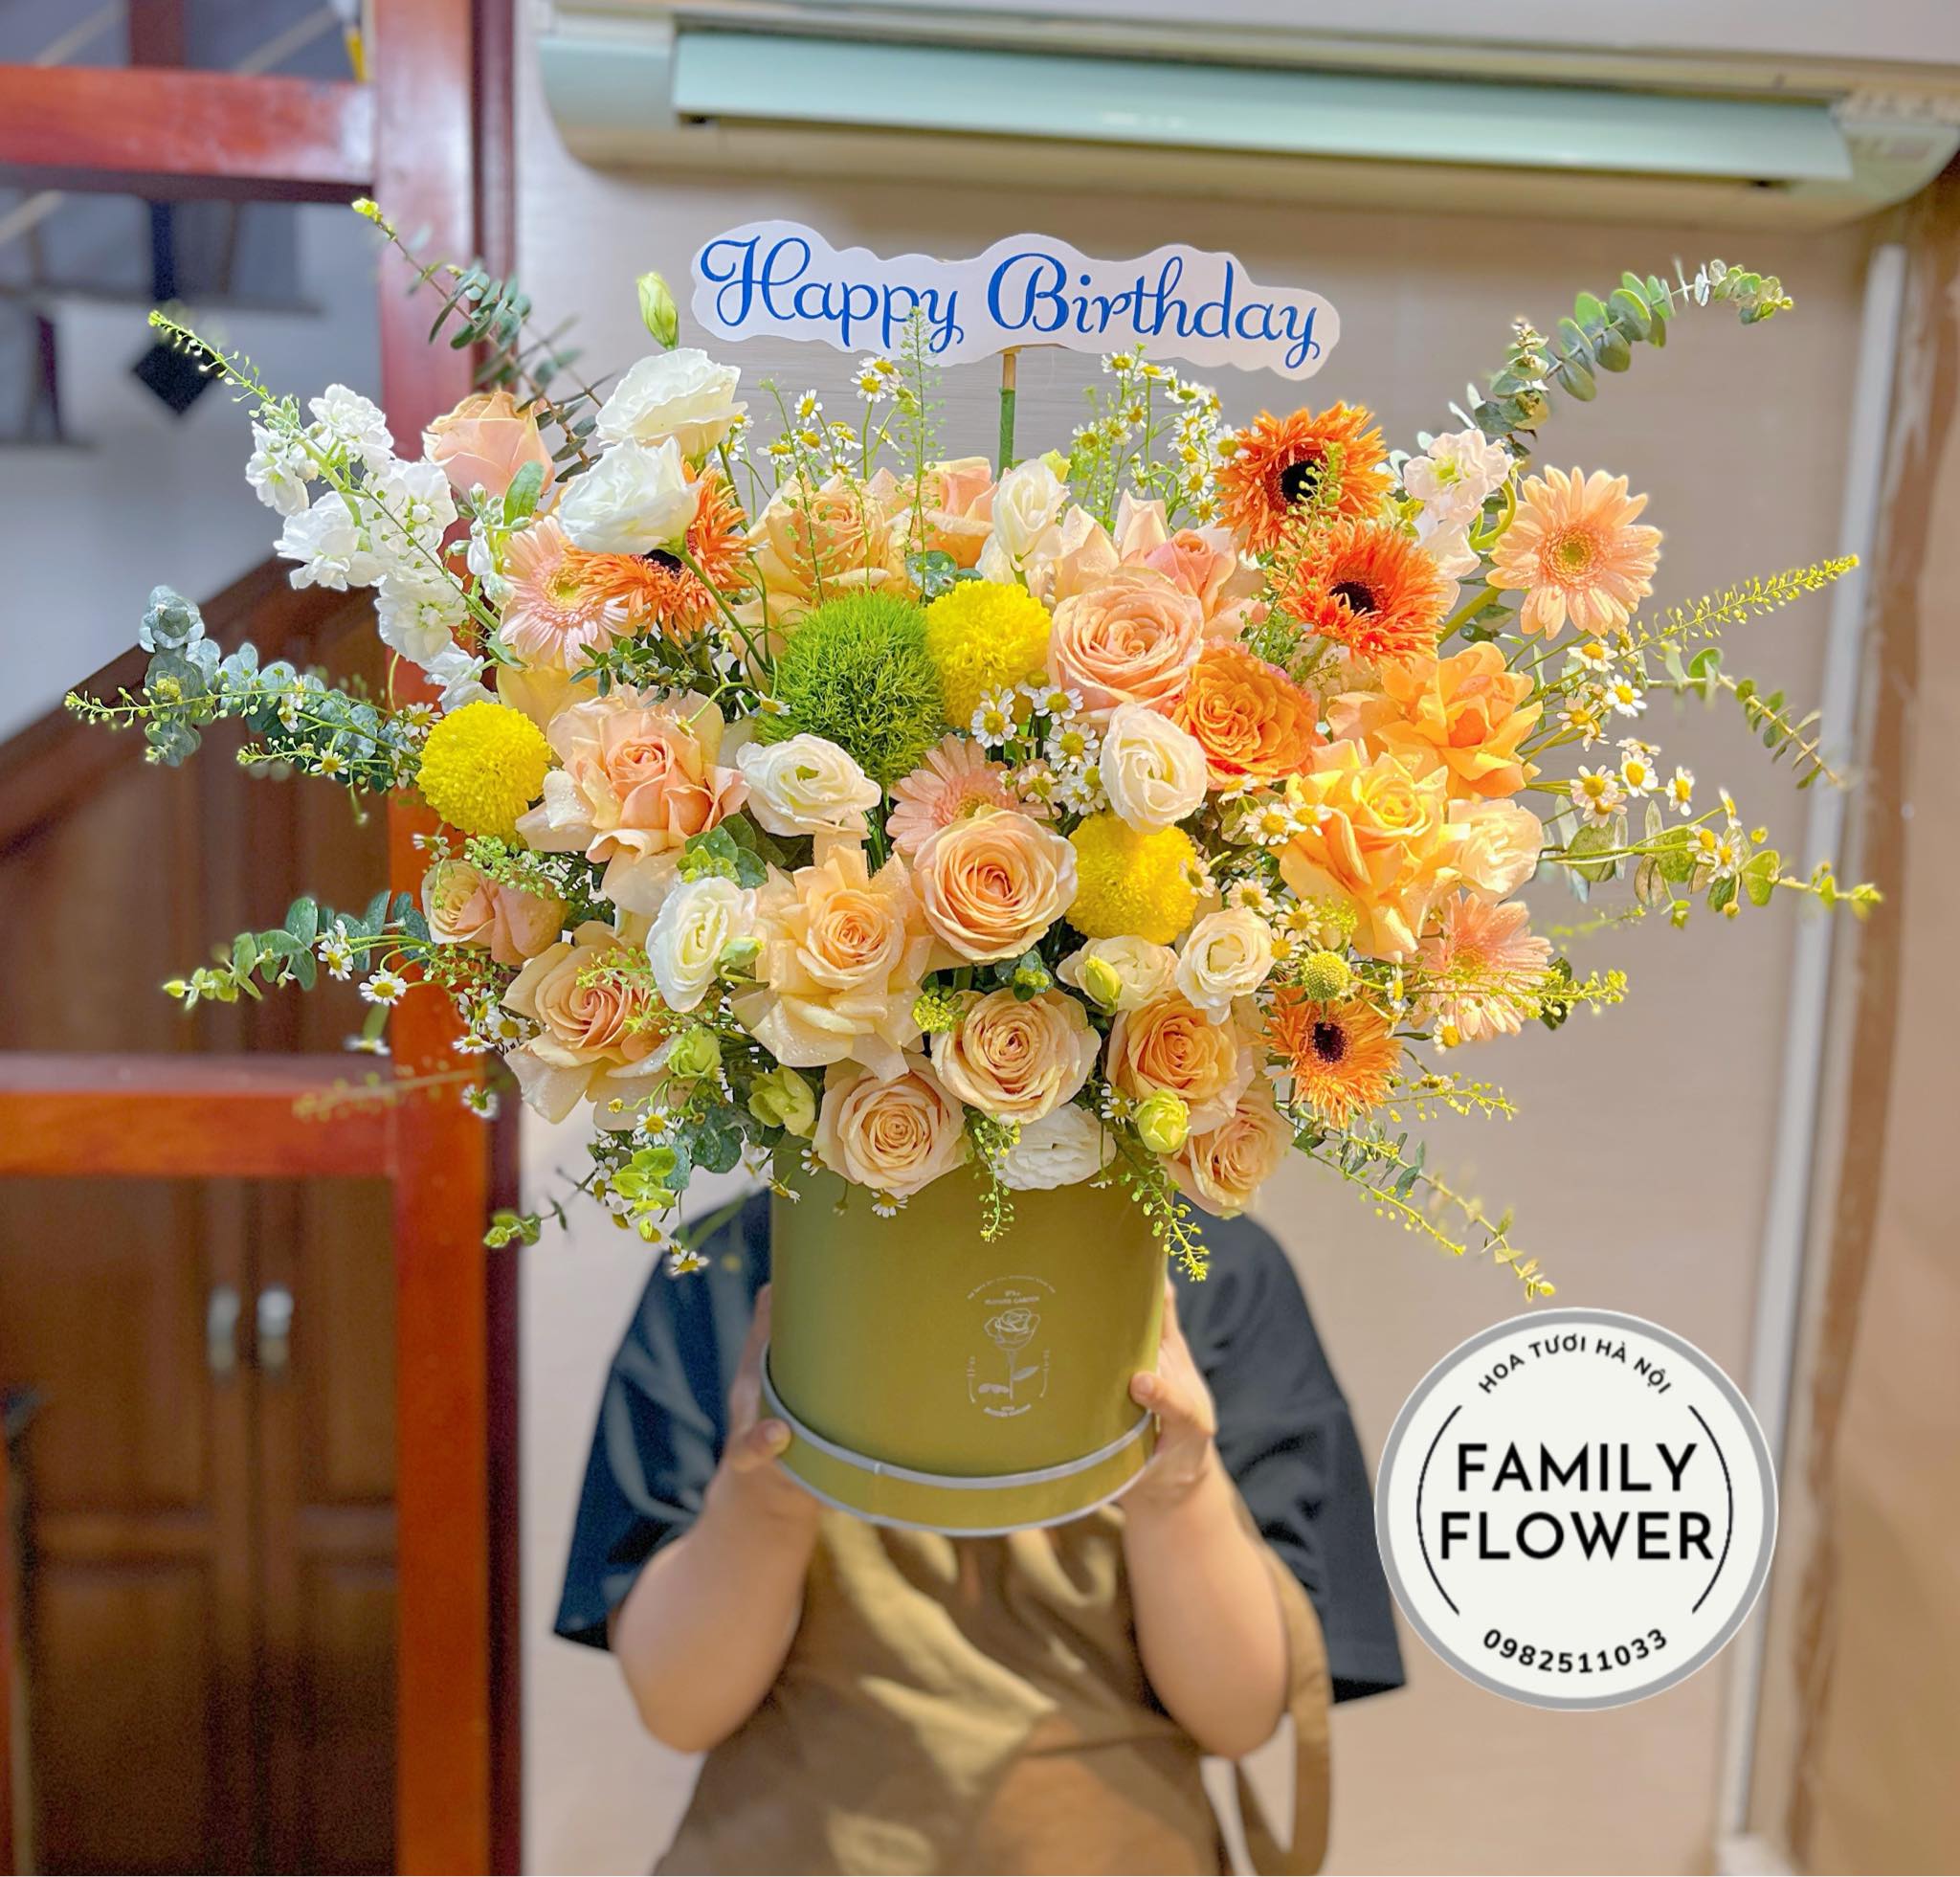 Hộp hoa tươi tặng chúc mừng sinh nhật tại Ba Đình Hà Nội ! Hoa tươi Hà Nội ! Mua hoa online tại Ba Đình Hà Nội